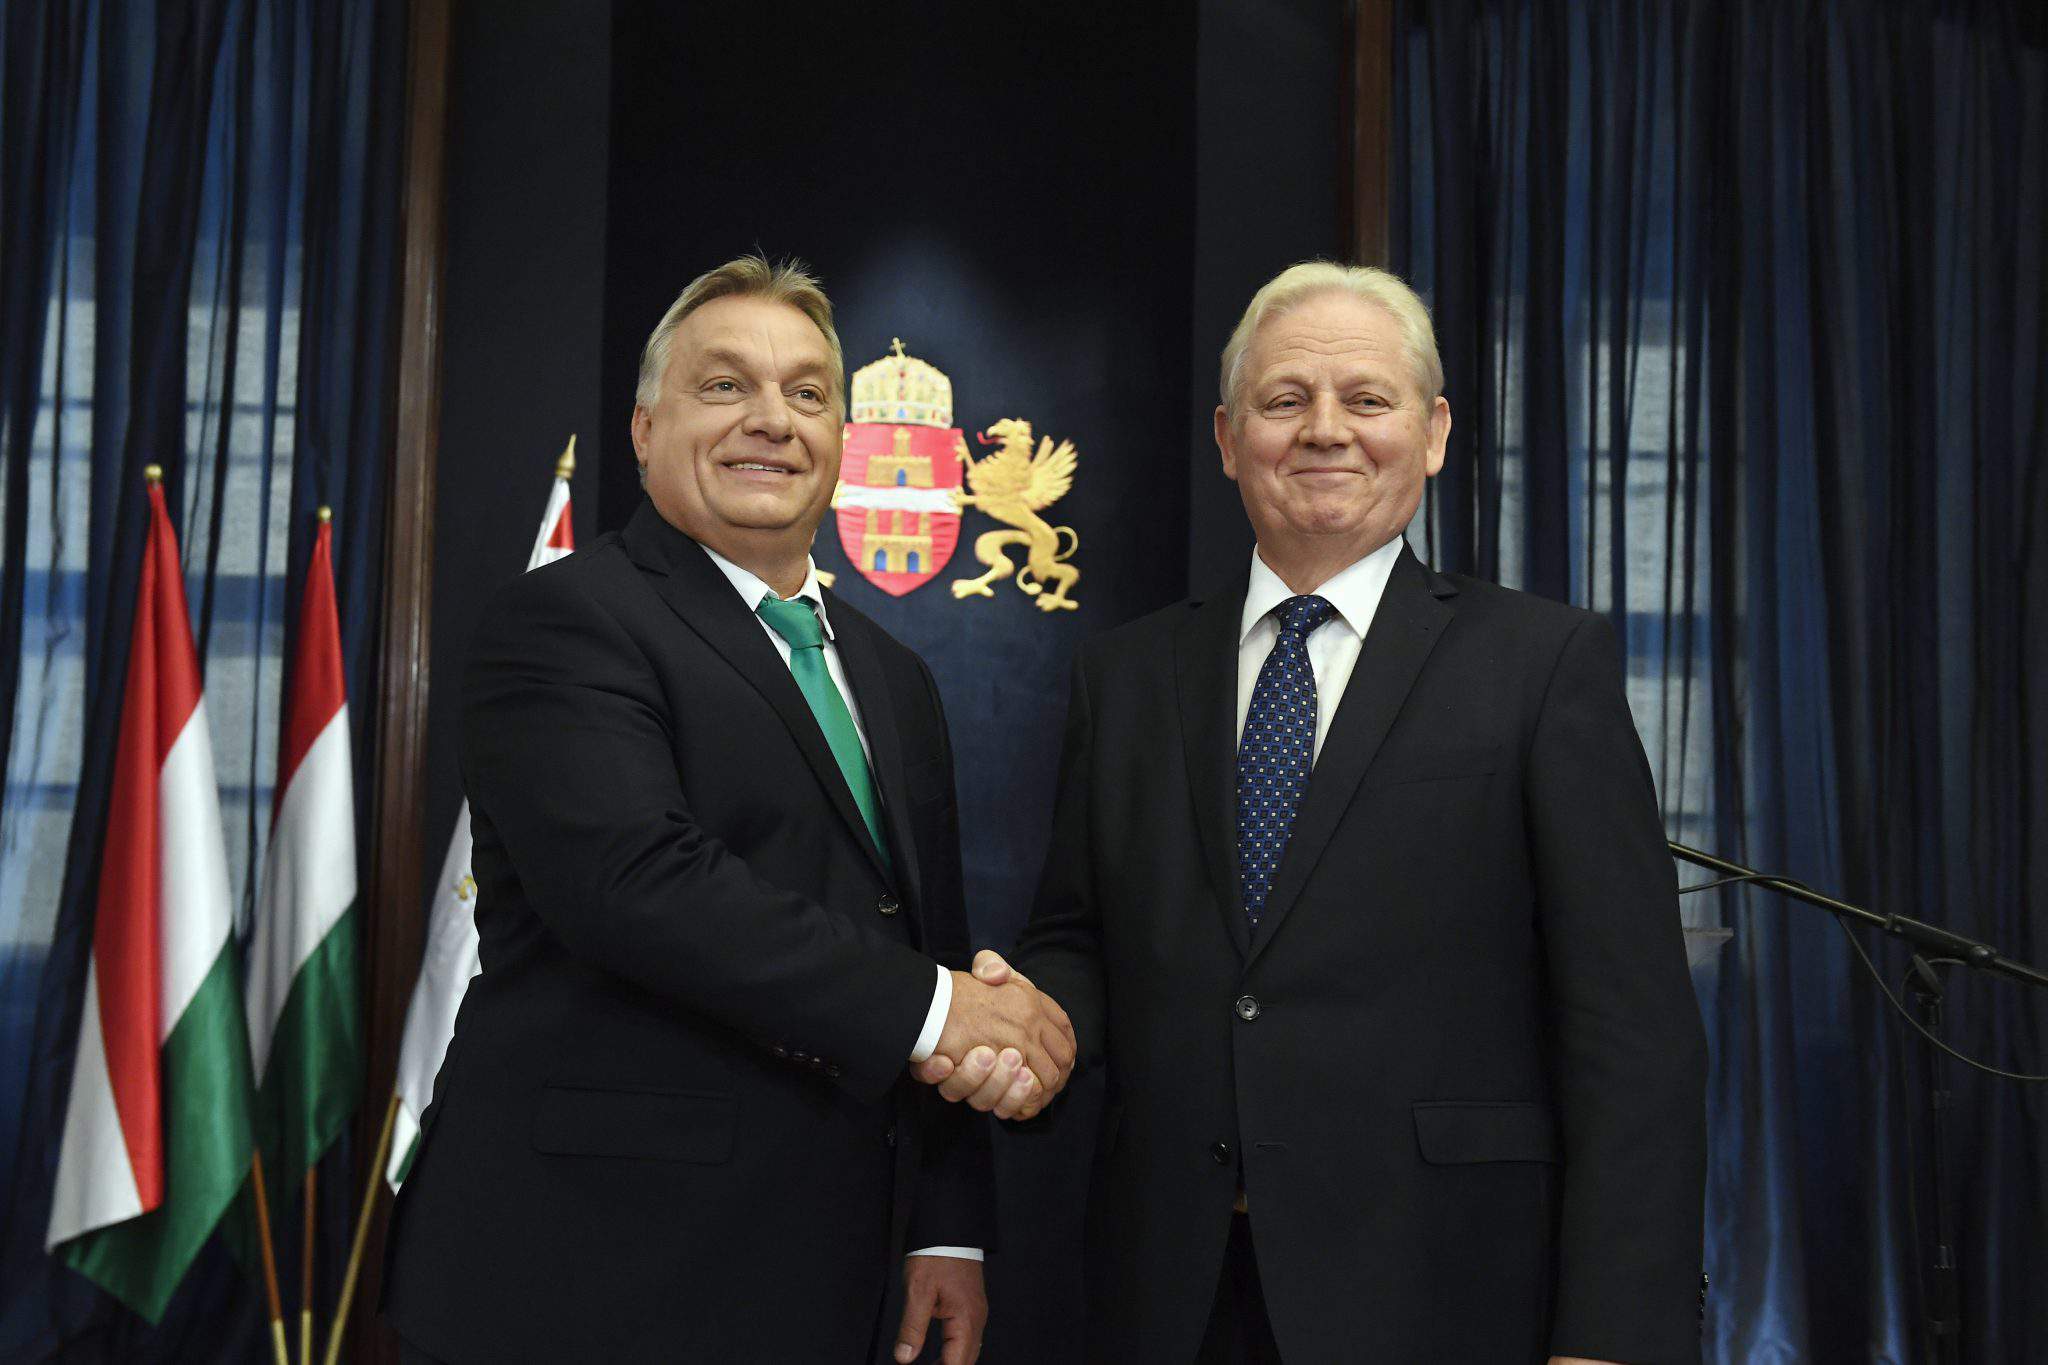 primar tarlós PM orbán